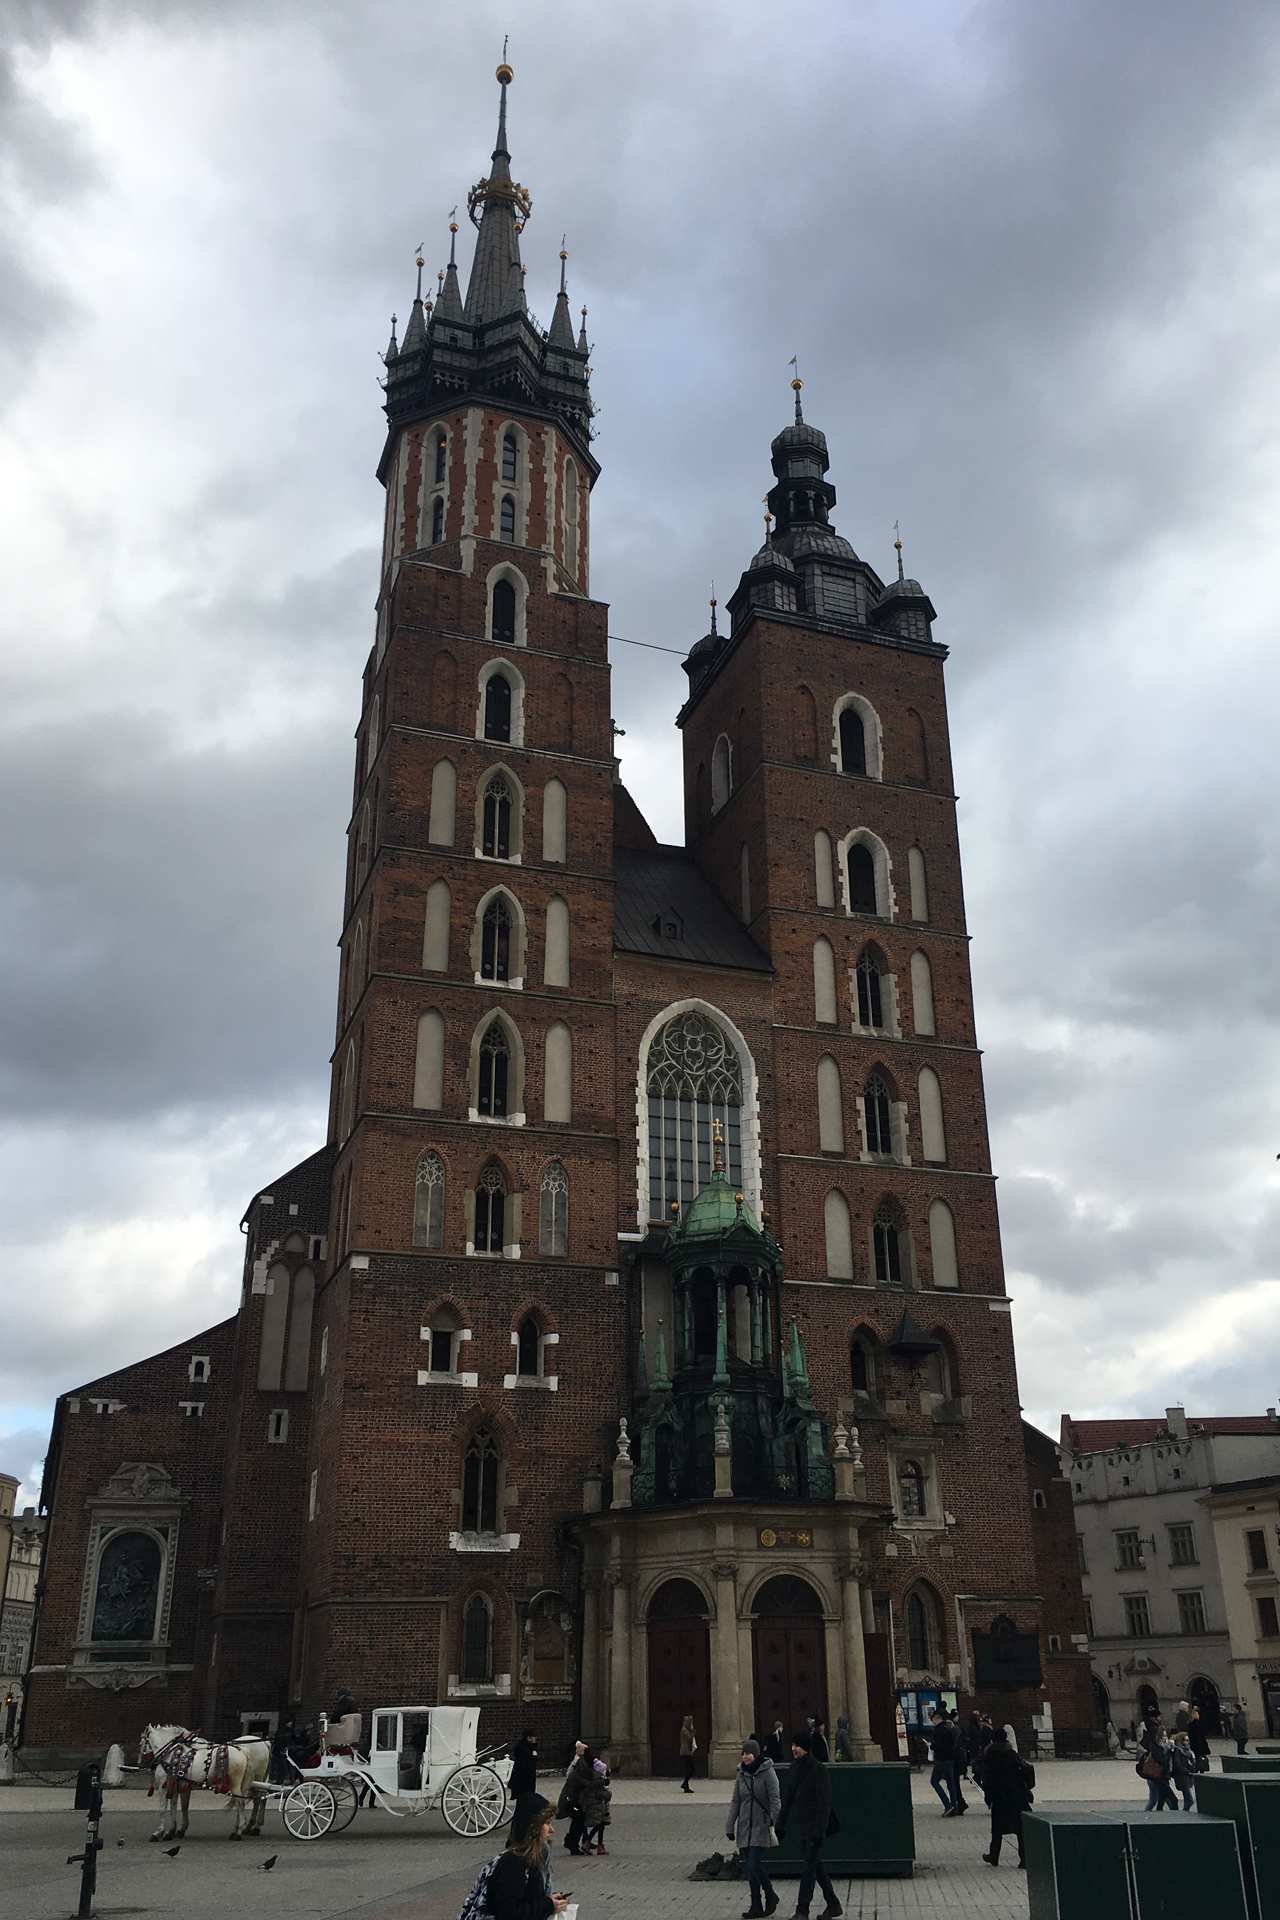 So wird man von der Basilika in Krakau empfangen. Die vielen Kutschen haben mich ein bisschen an Wien erinnert.